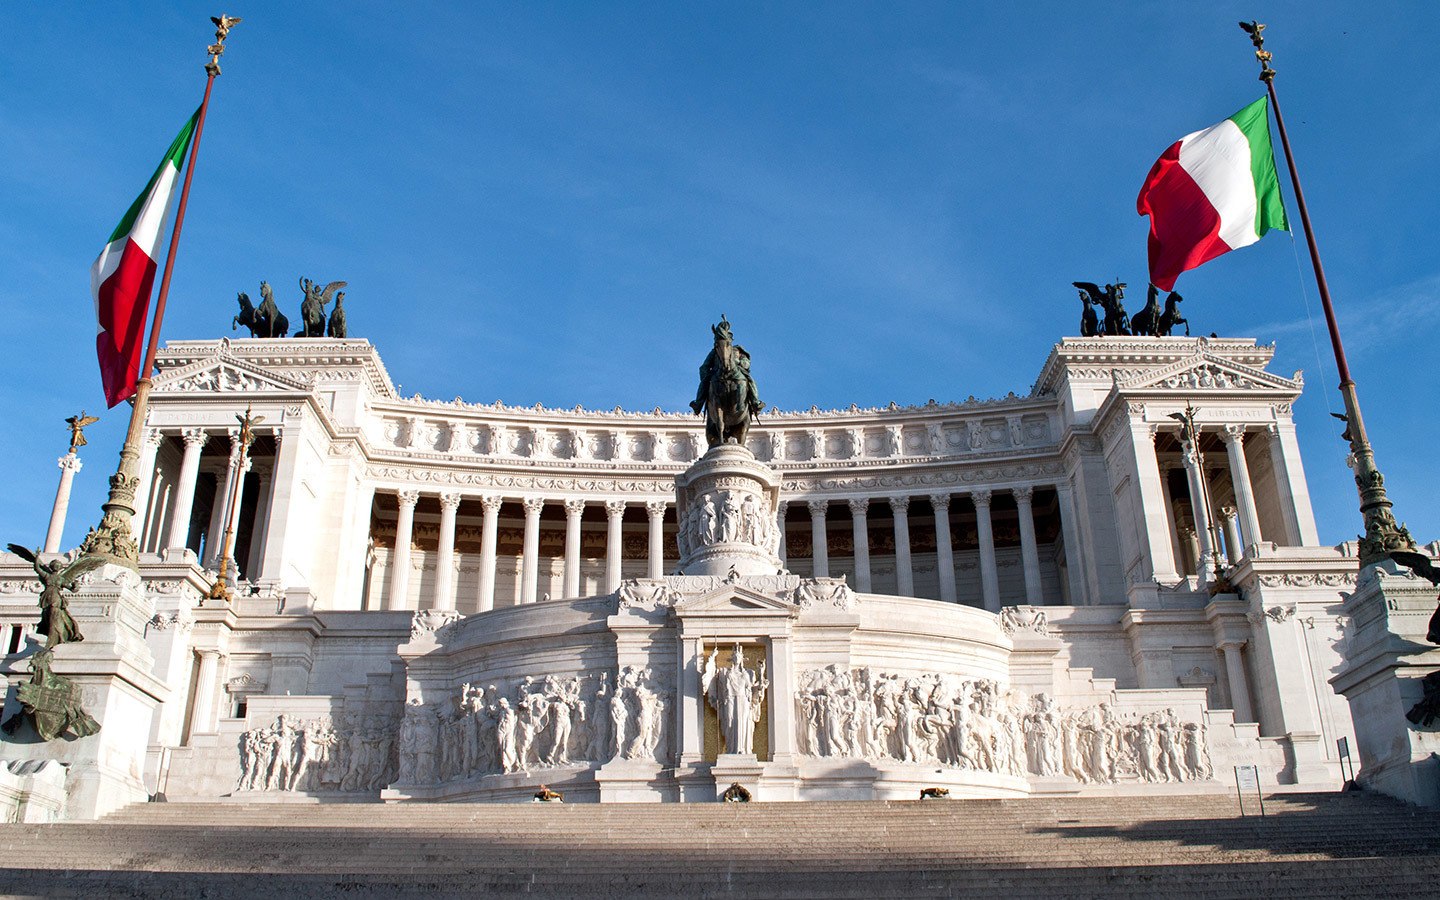 The Vittorio Emanuele II Monument in Rome